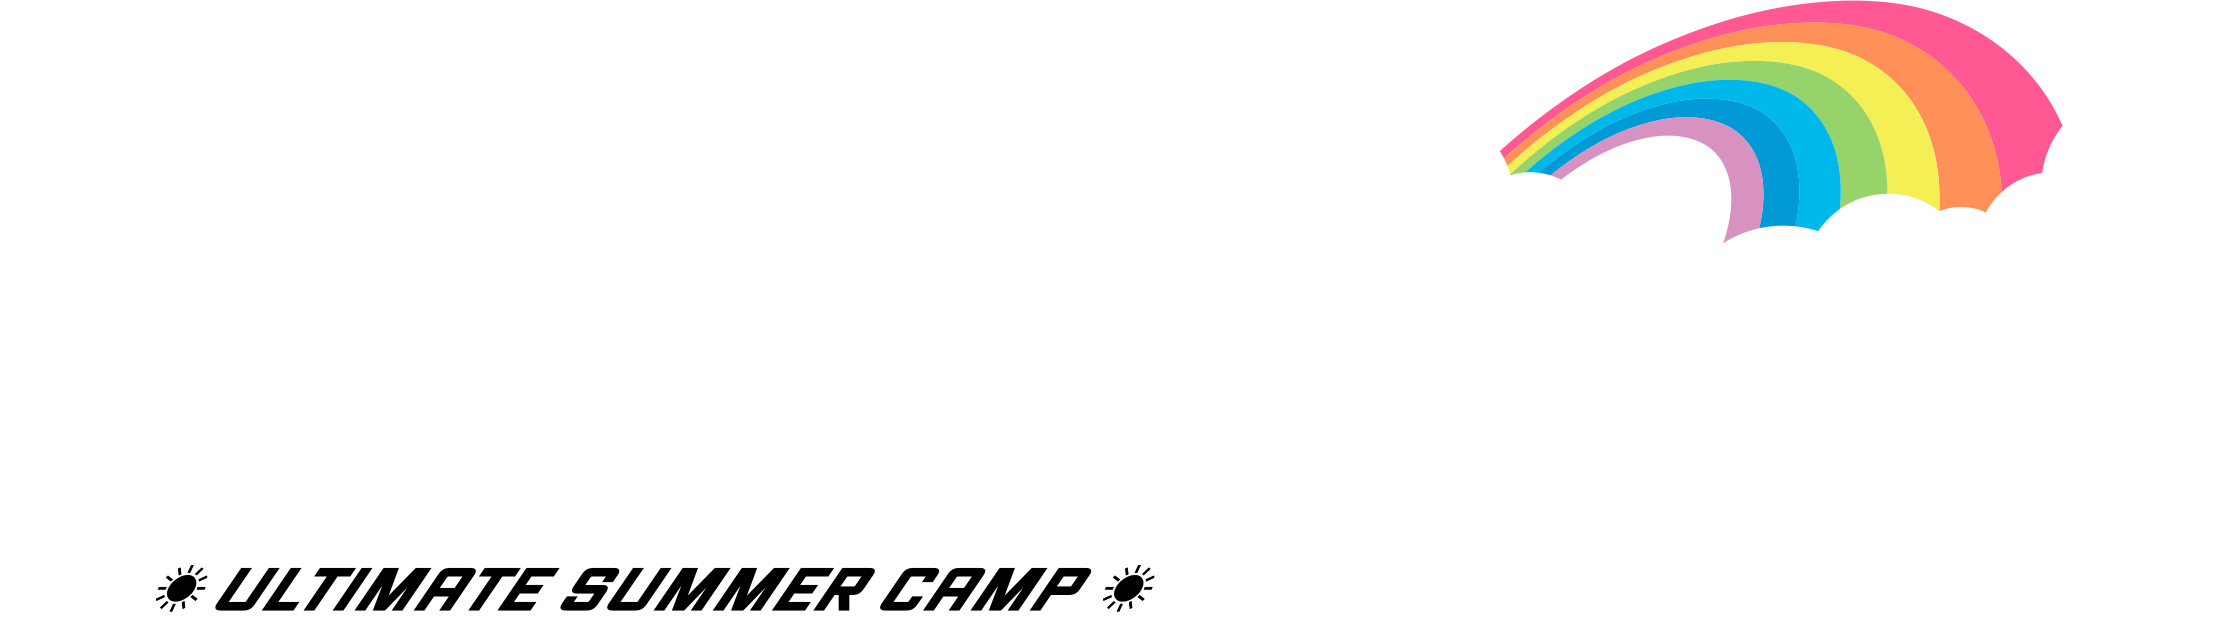 Summer Camp Logo png download - 500*500 - Free Transparent Summer Camp png  Download. - CleanPNG / KissPNG